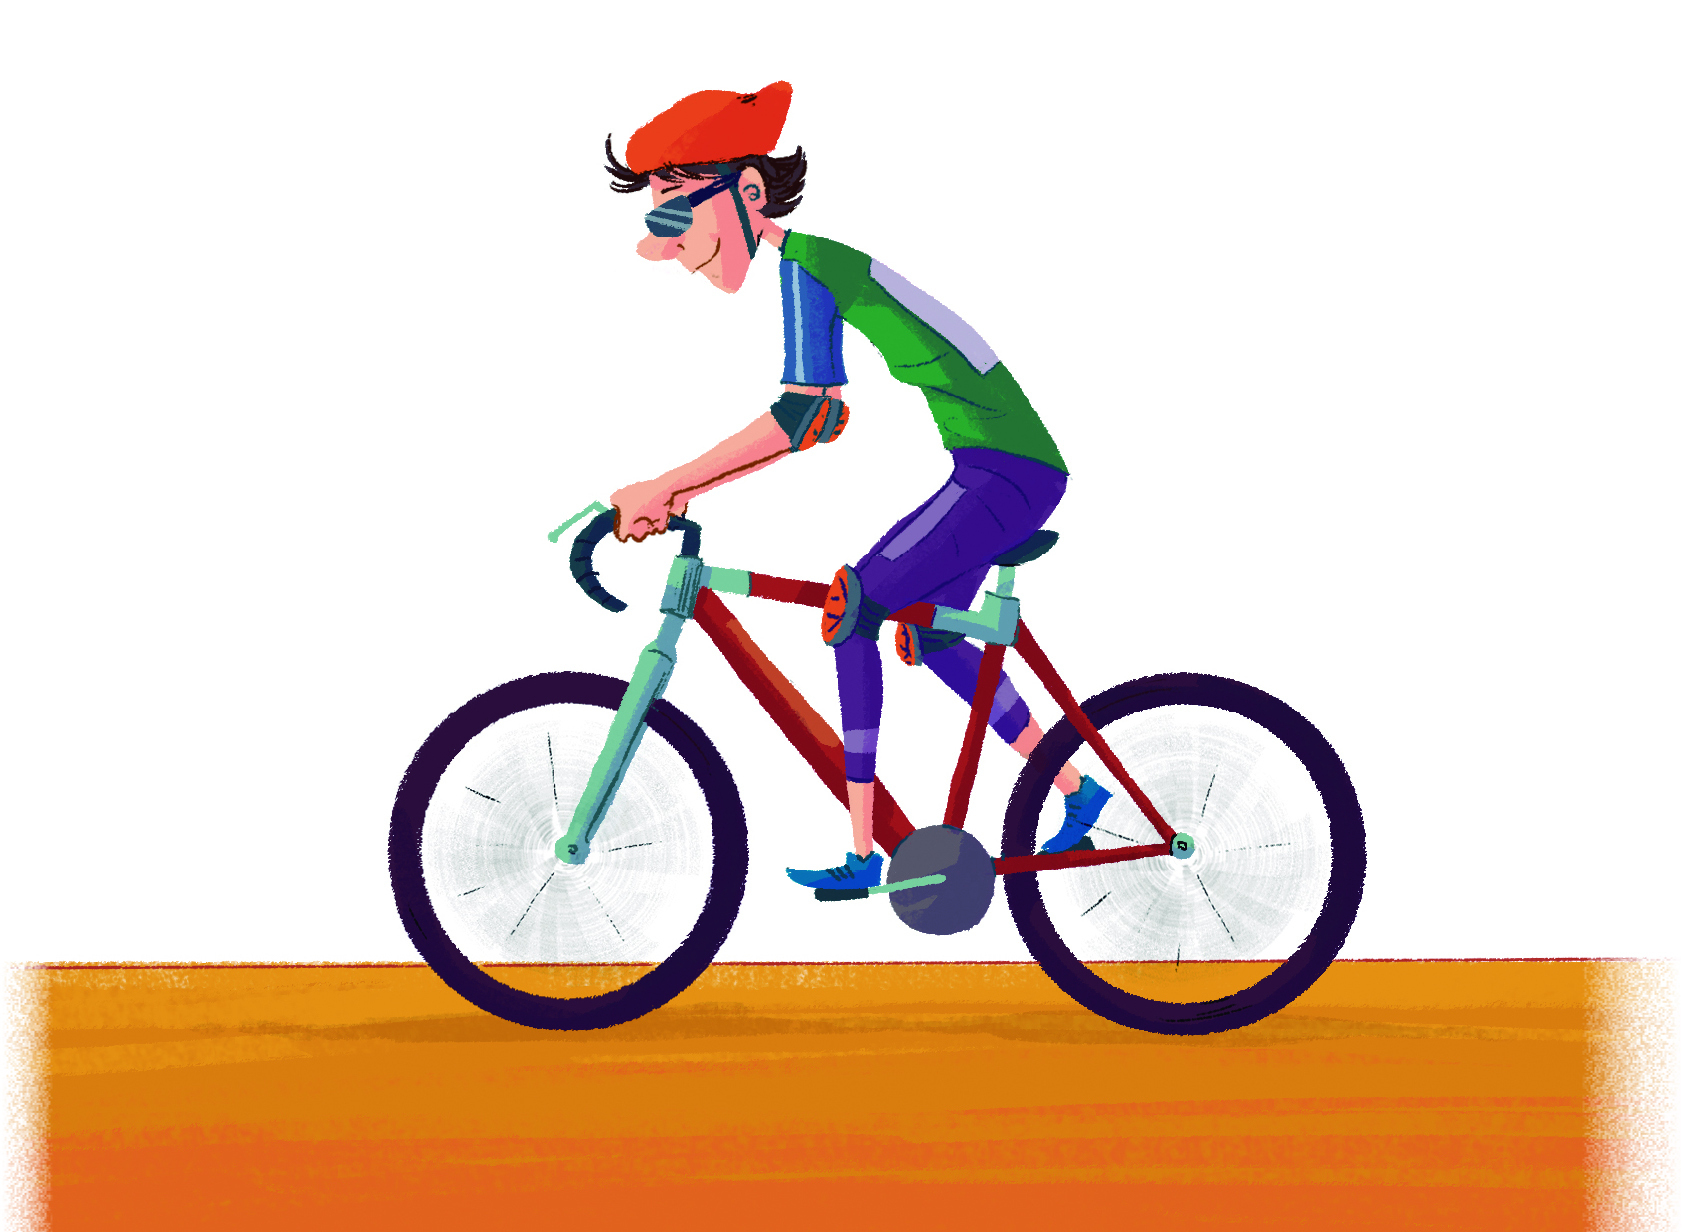 Ilustração. Homem branco de capacete vermelho, usa óculos de proteção e veste blusa verde e calça roxa. Ele está sobre uma bicicleta.